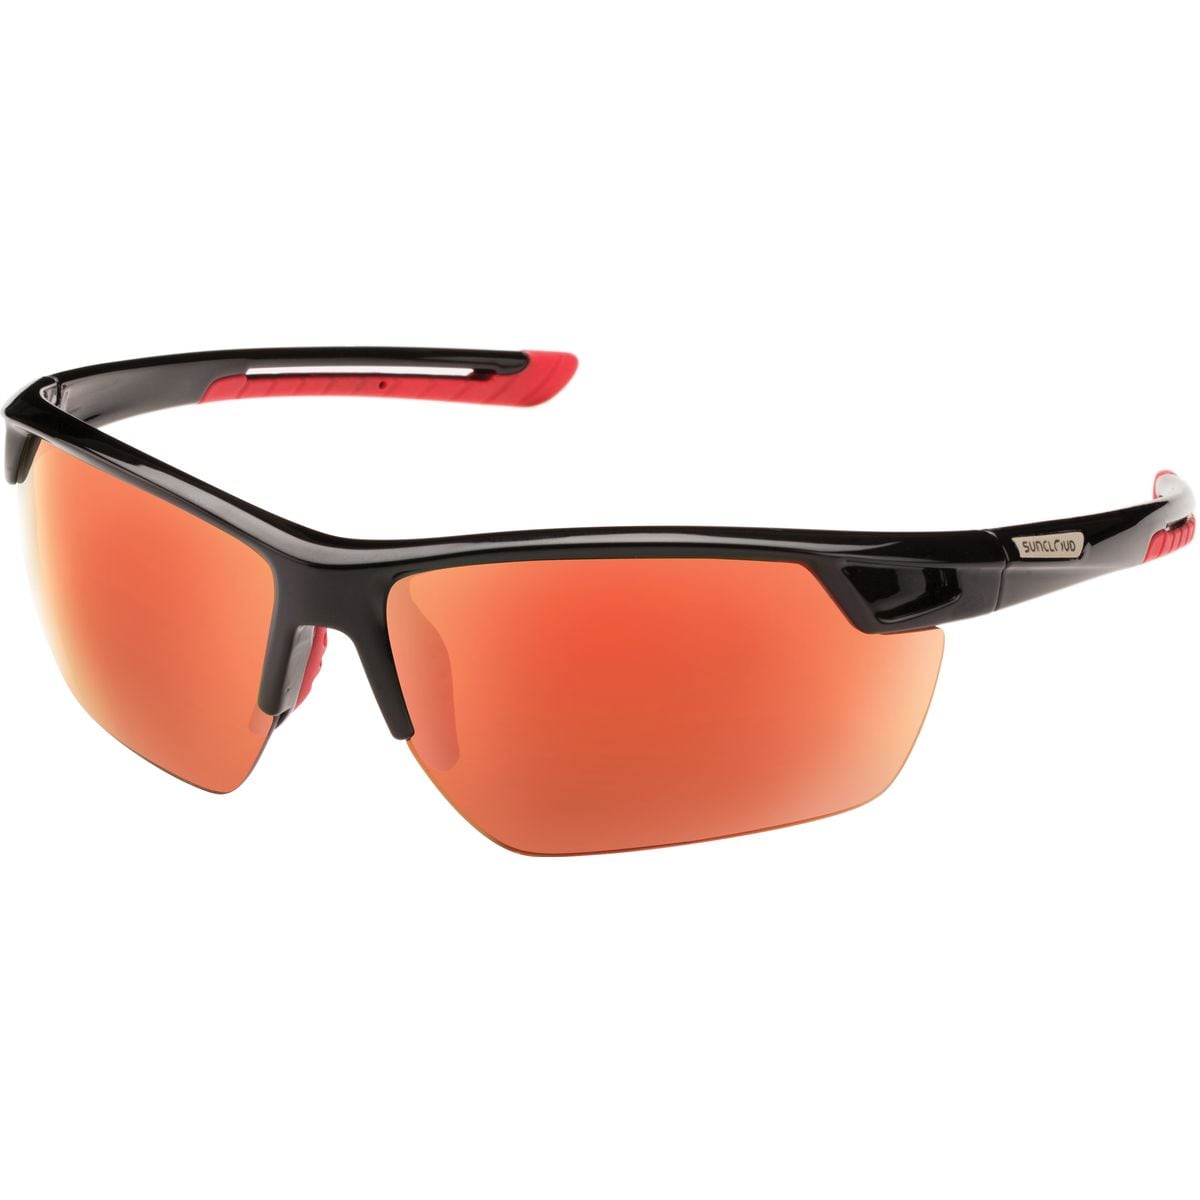 Поляризованные солнцезащитные очки contender Suncloud Polarized Optics, цвет black/red mirror очки солнцезащитные stylemark polarized l1505d